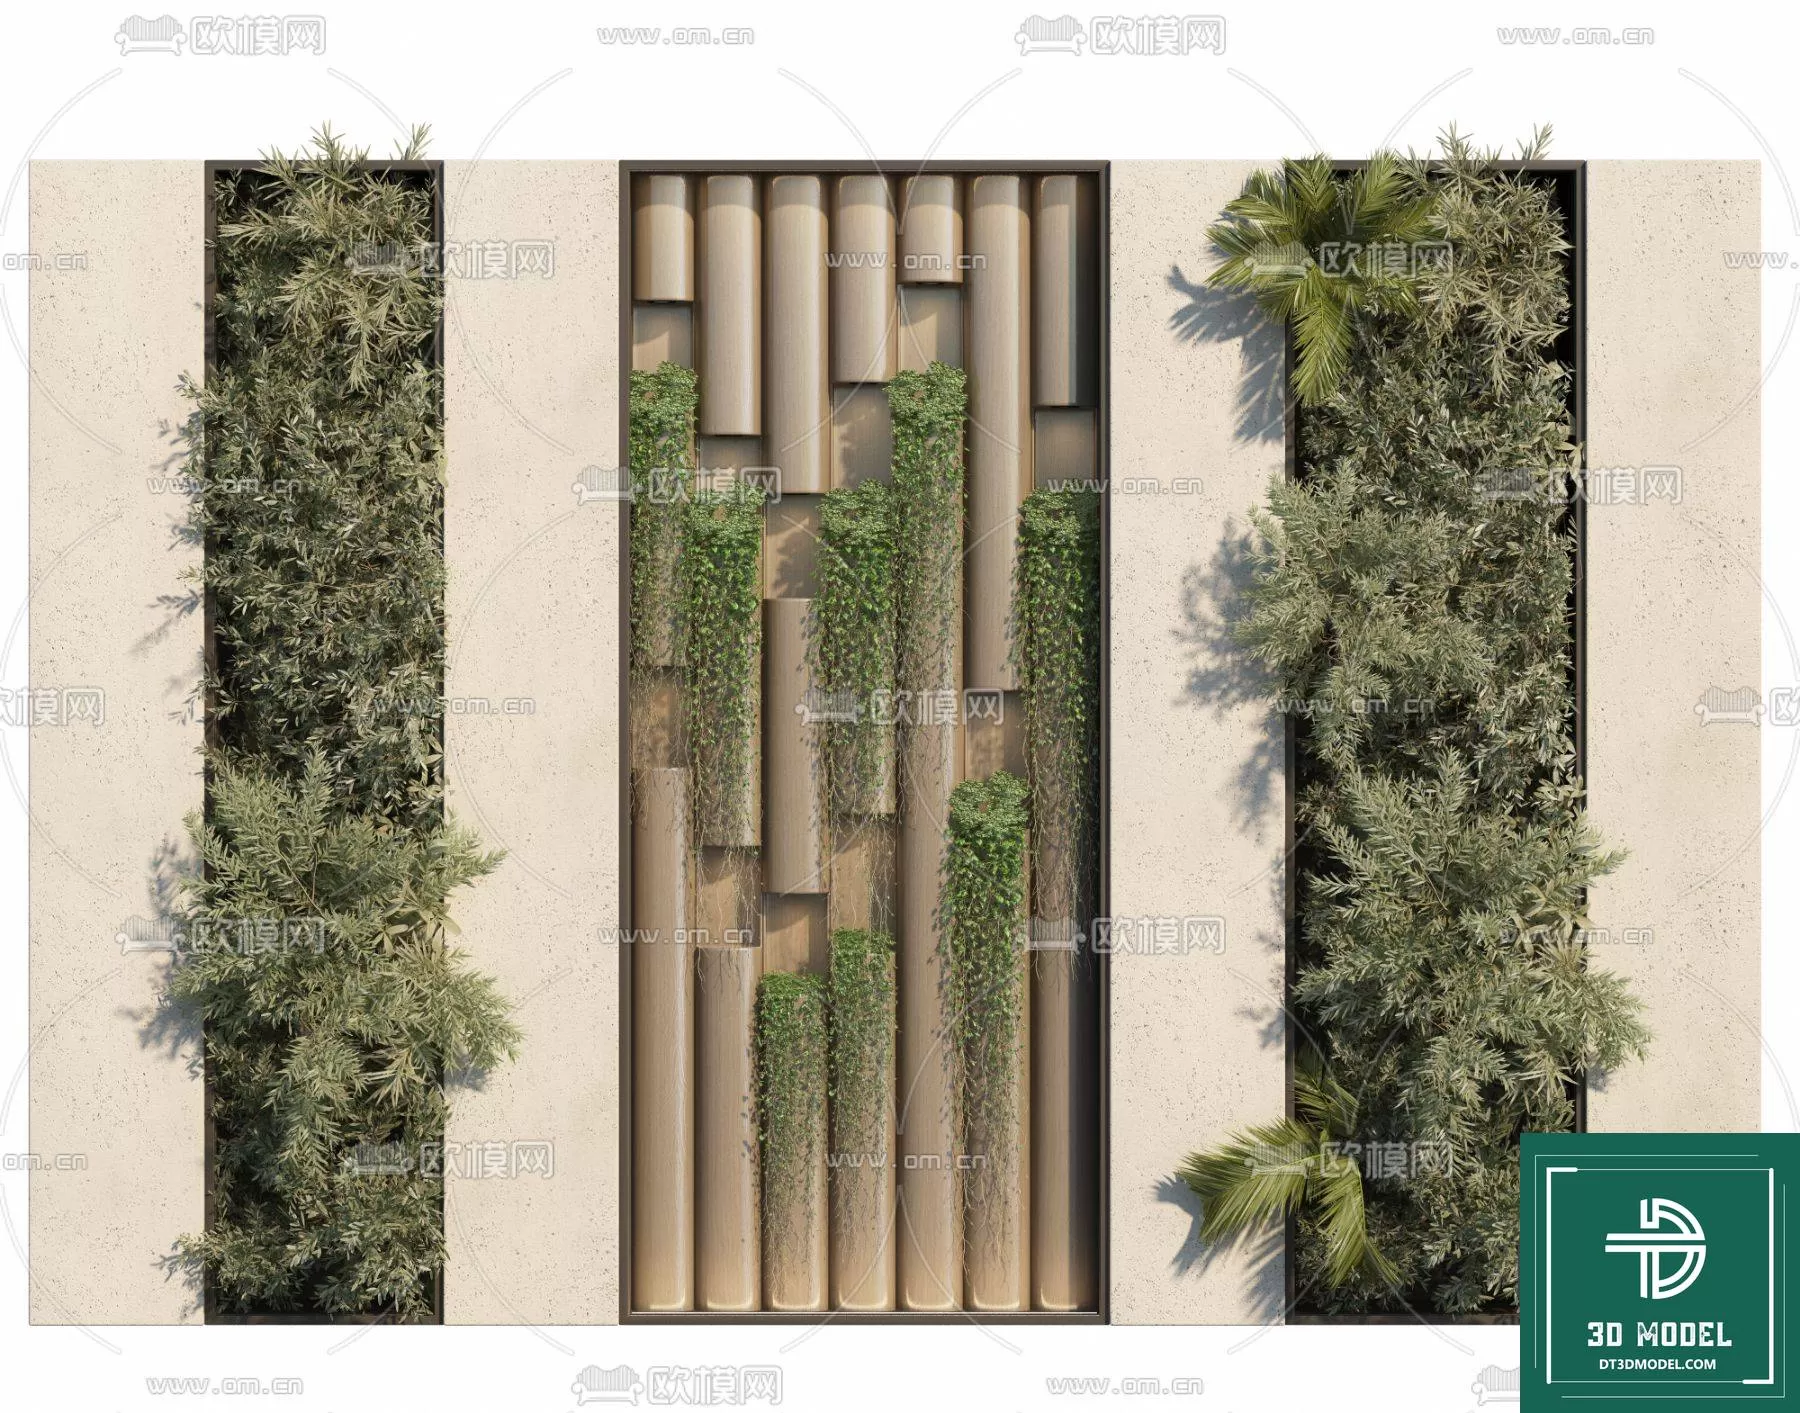 VERTICAL GARDEN – FITOWALL PLANT 3D MODEL – 165